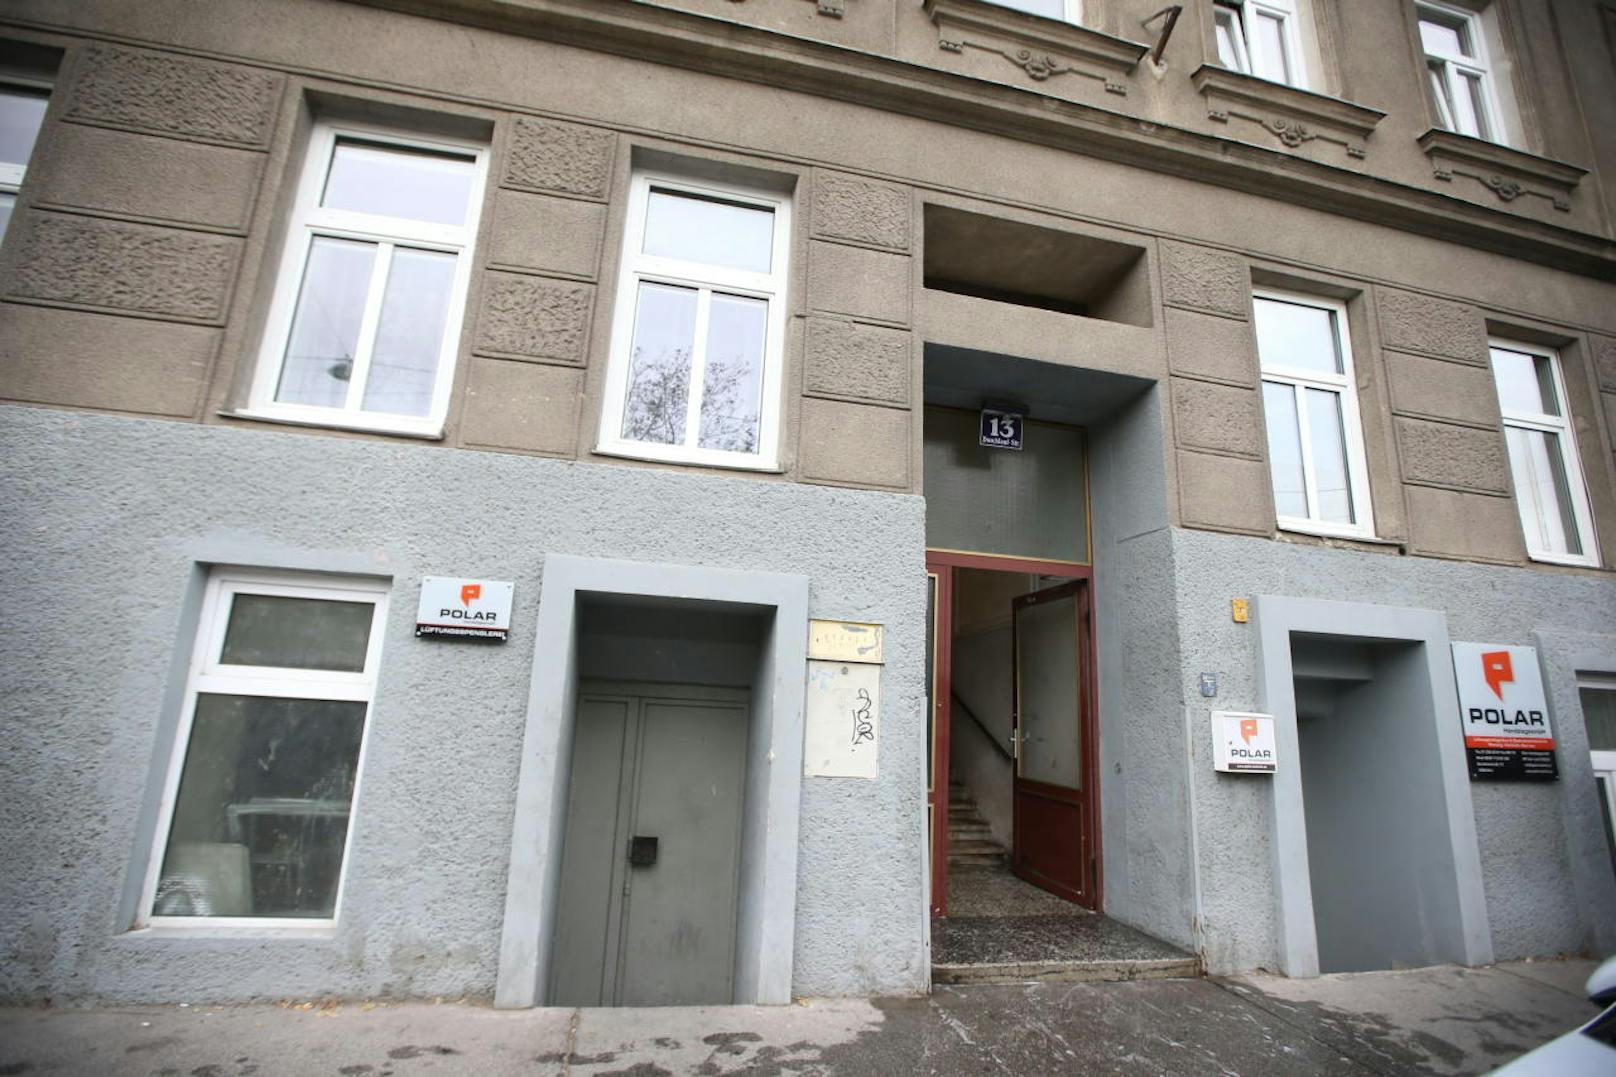 Im Stiegenhaus dieses Mehrparteienhauses in Wien-Brigittenau wurde gegen Mitternacht die Leiche eines Mannes gefunden.